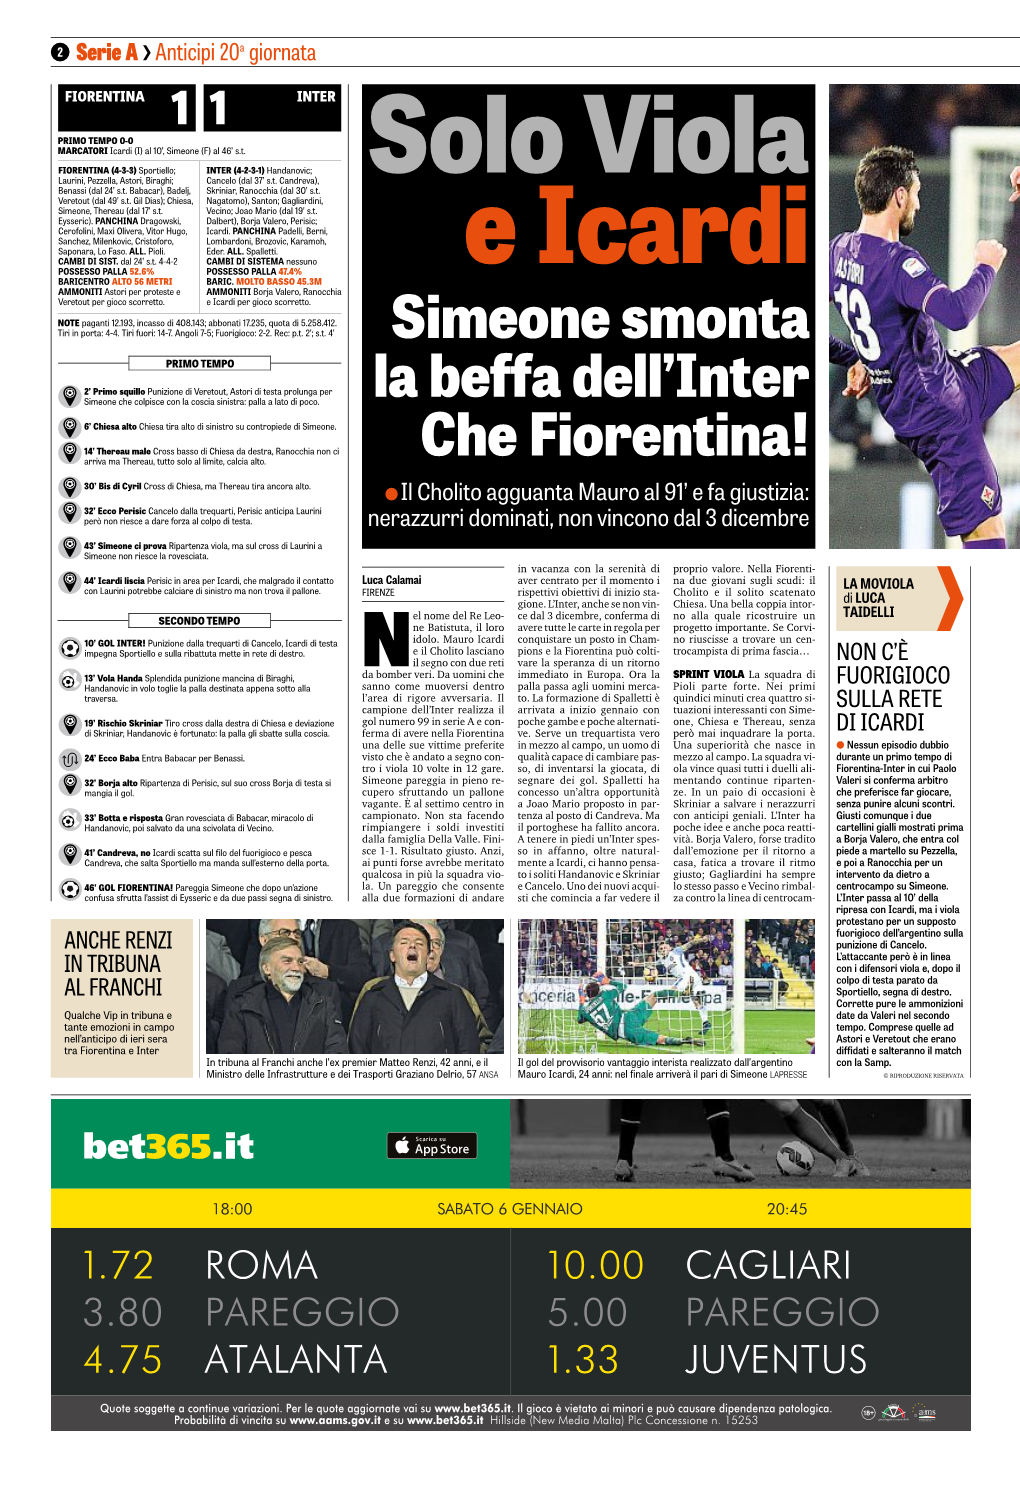 Simeone Smonta La Beffa Dell'inter Che Fiorentina!